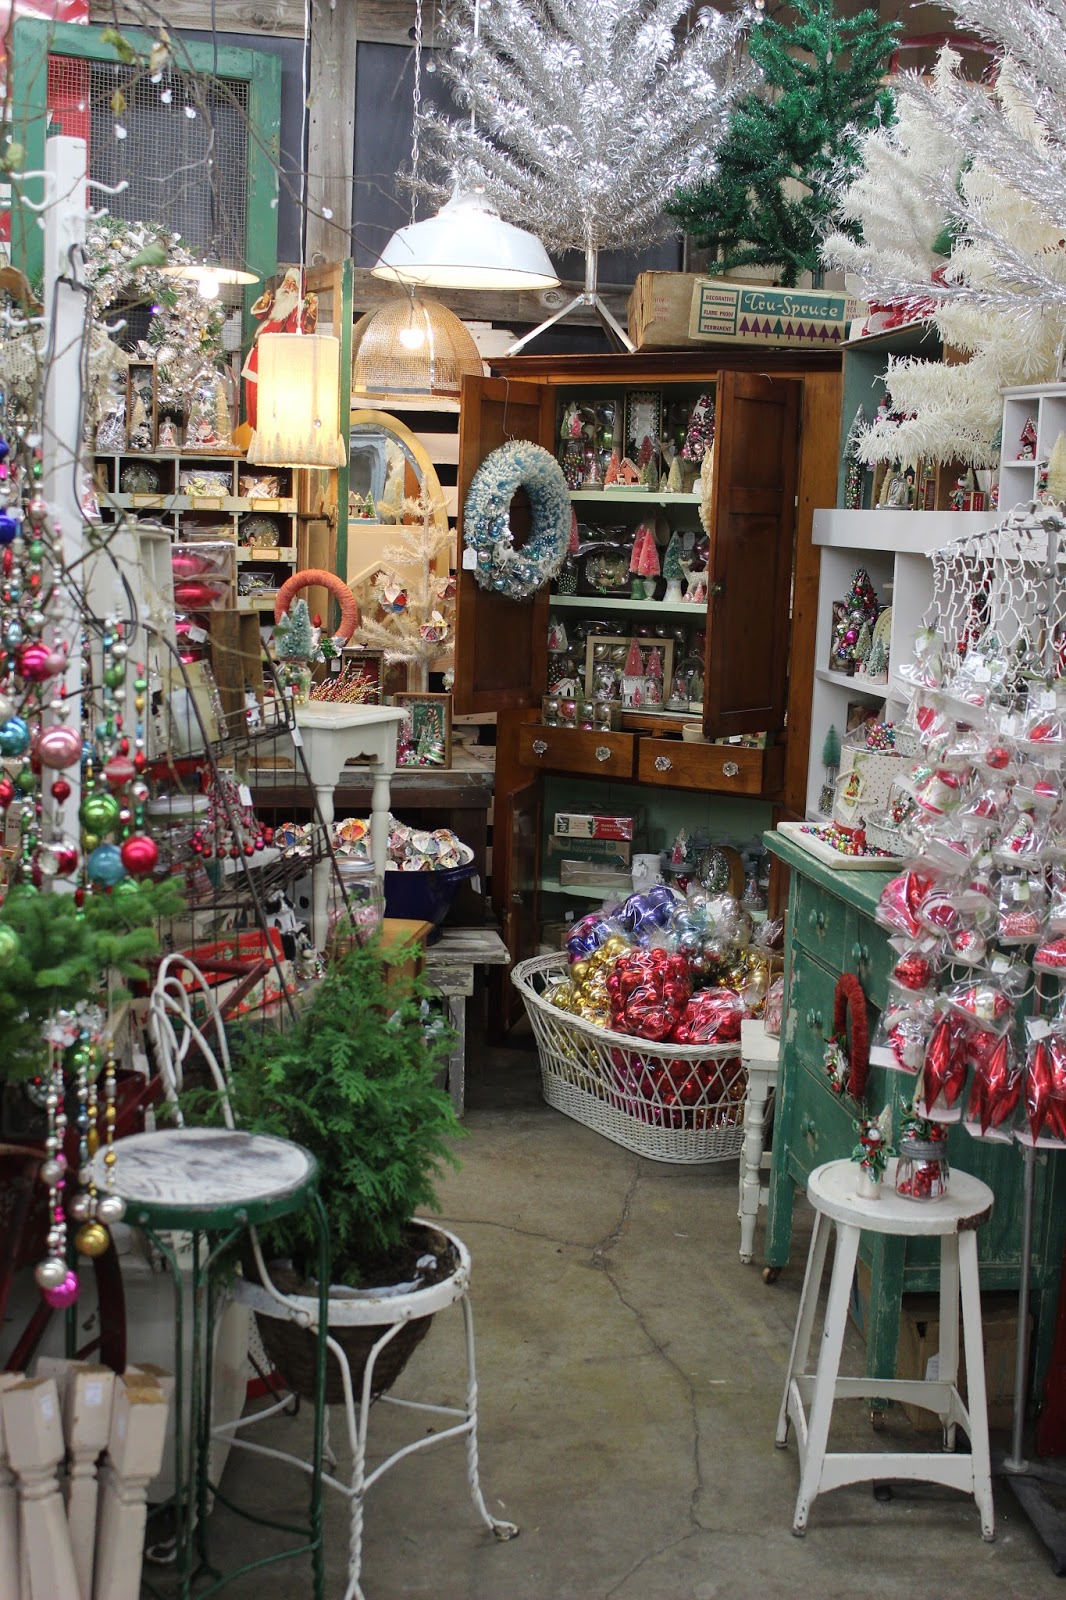 Monticello Antique Marketplace: Shop Monticello this Holiday Season...